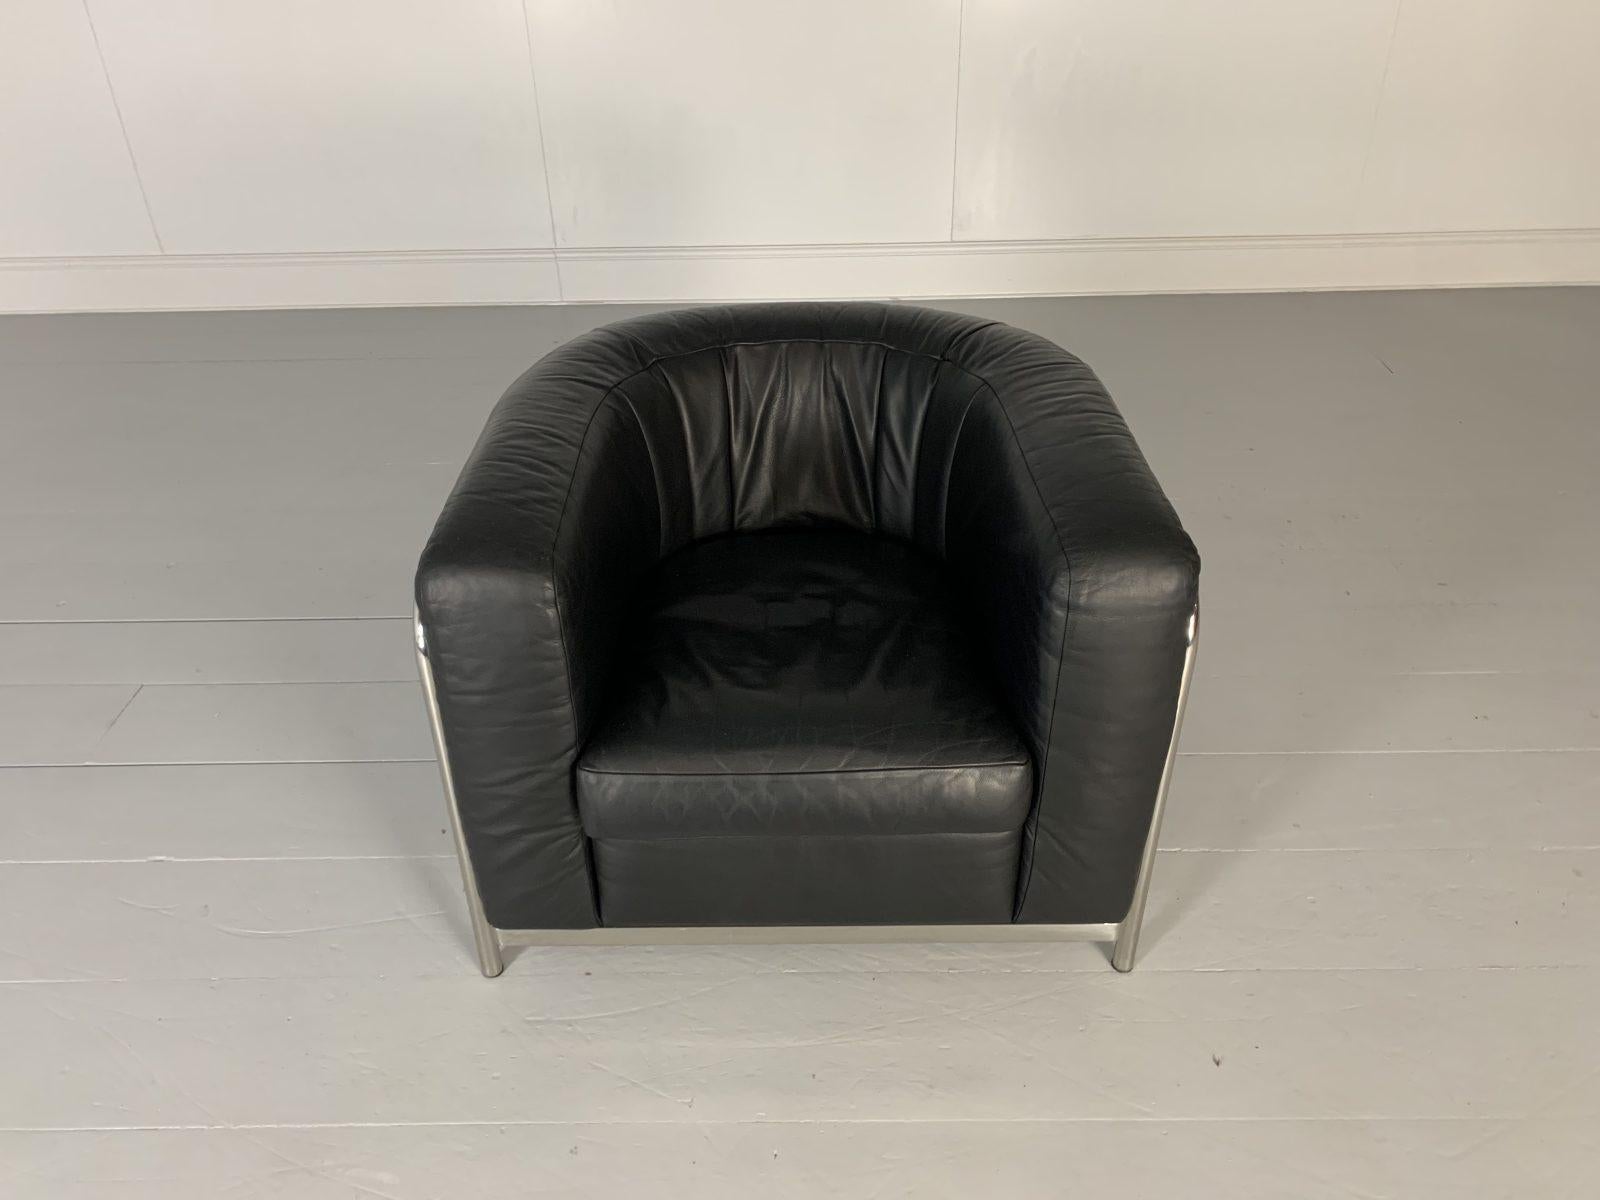 Zanotta “Onda” Armchair, in Black “Scozia” Leather and Chrome In Good Condition In Barrowford, GB